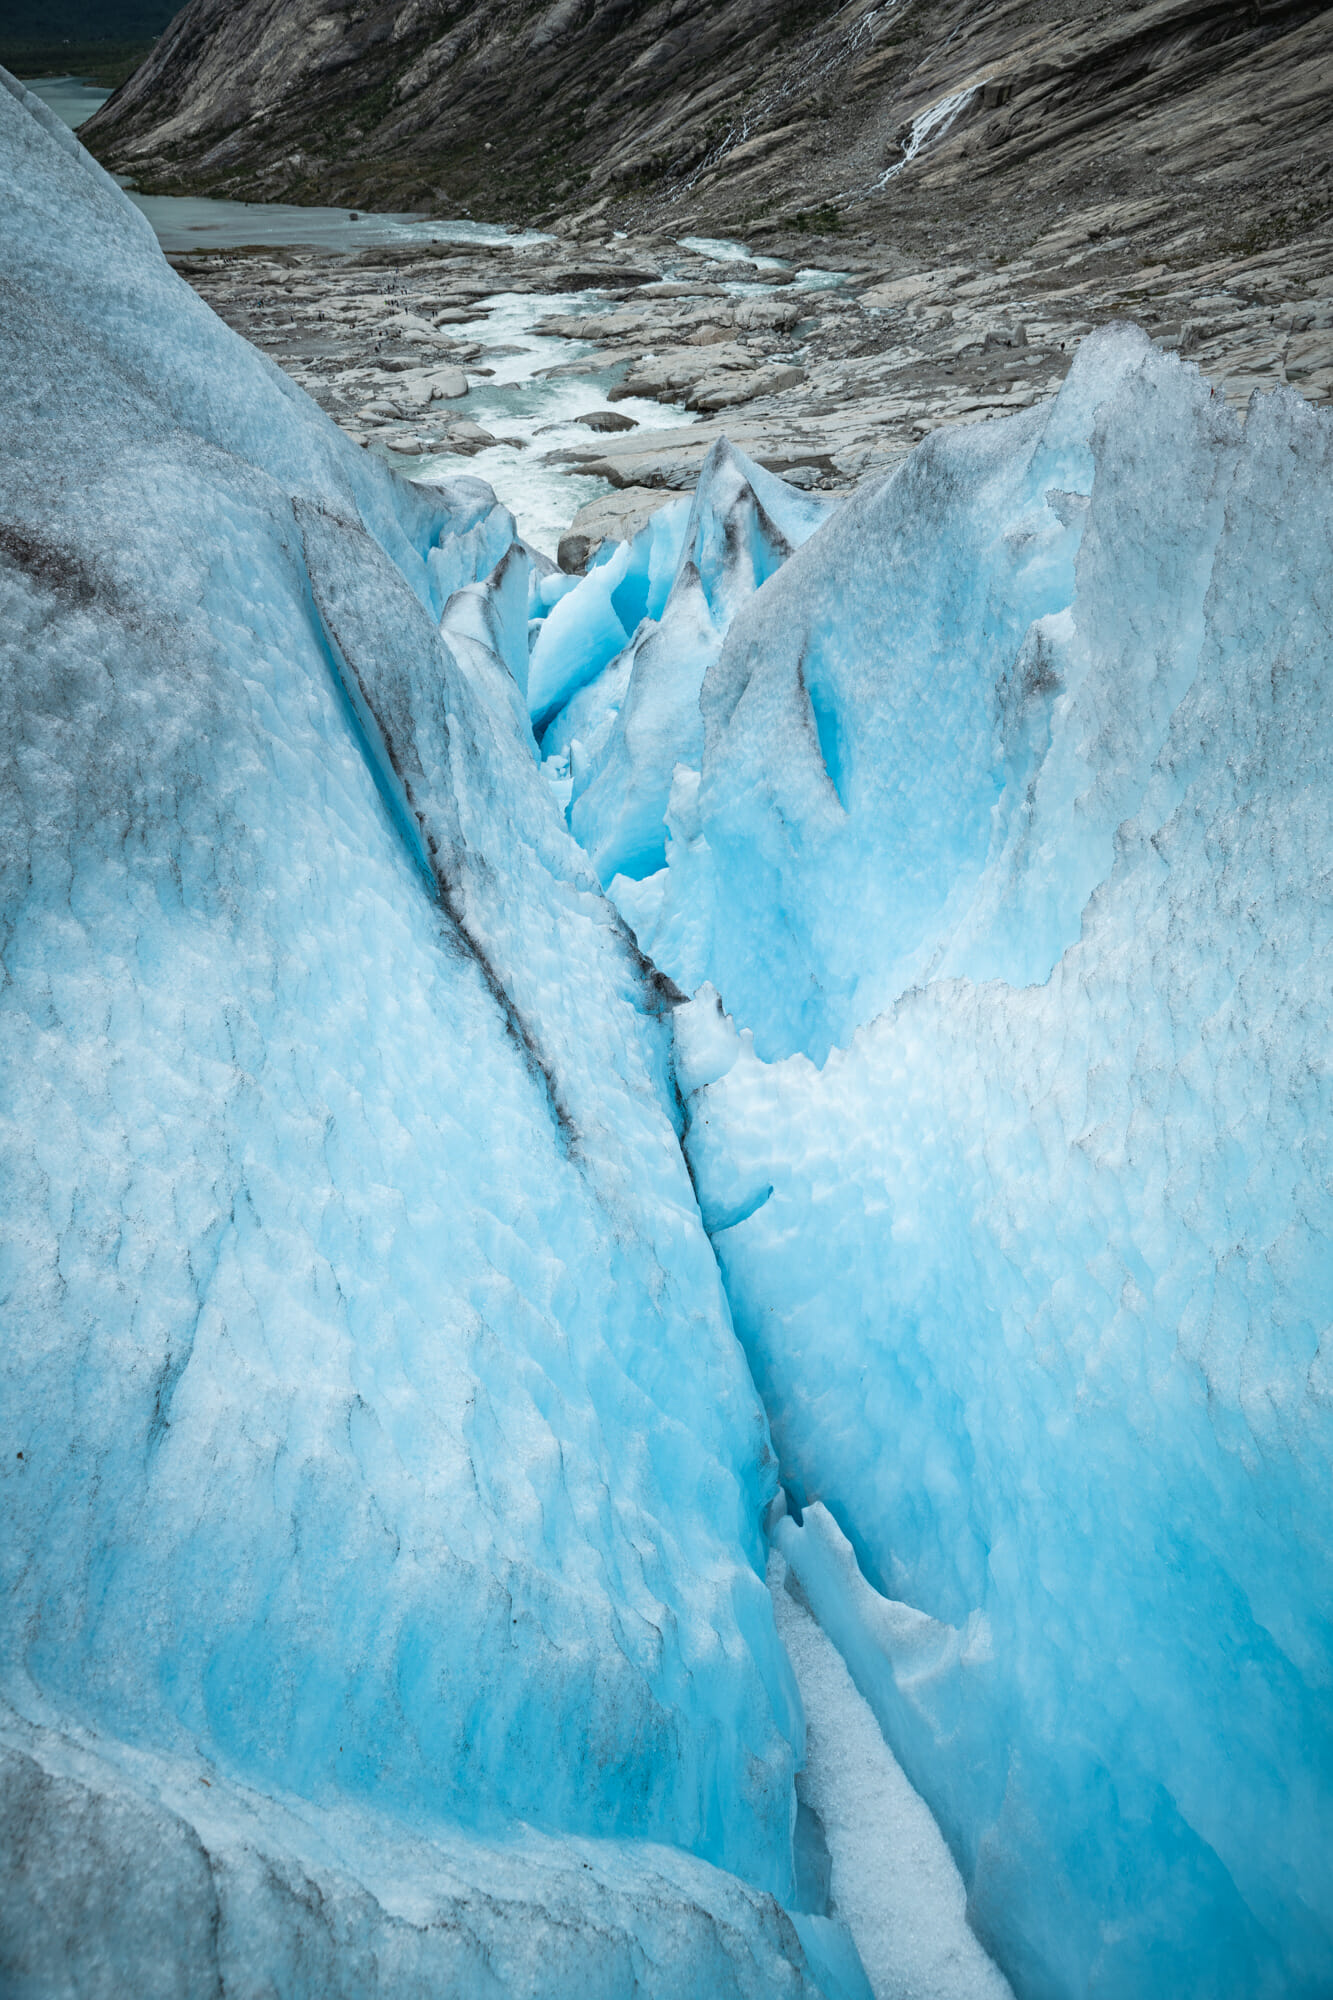 Marcher sur un glacier en Norvège - Nigardsbreen